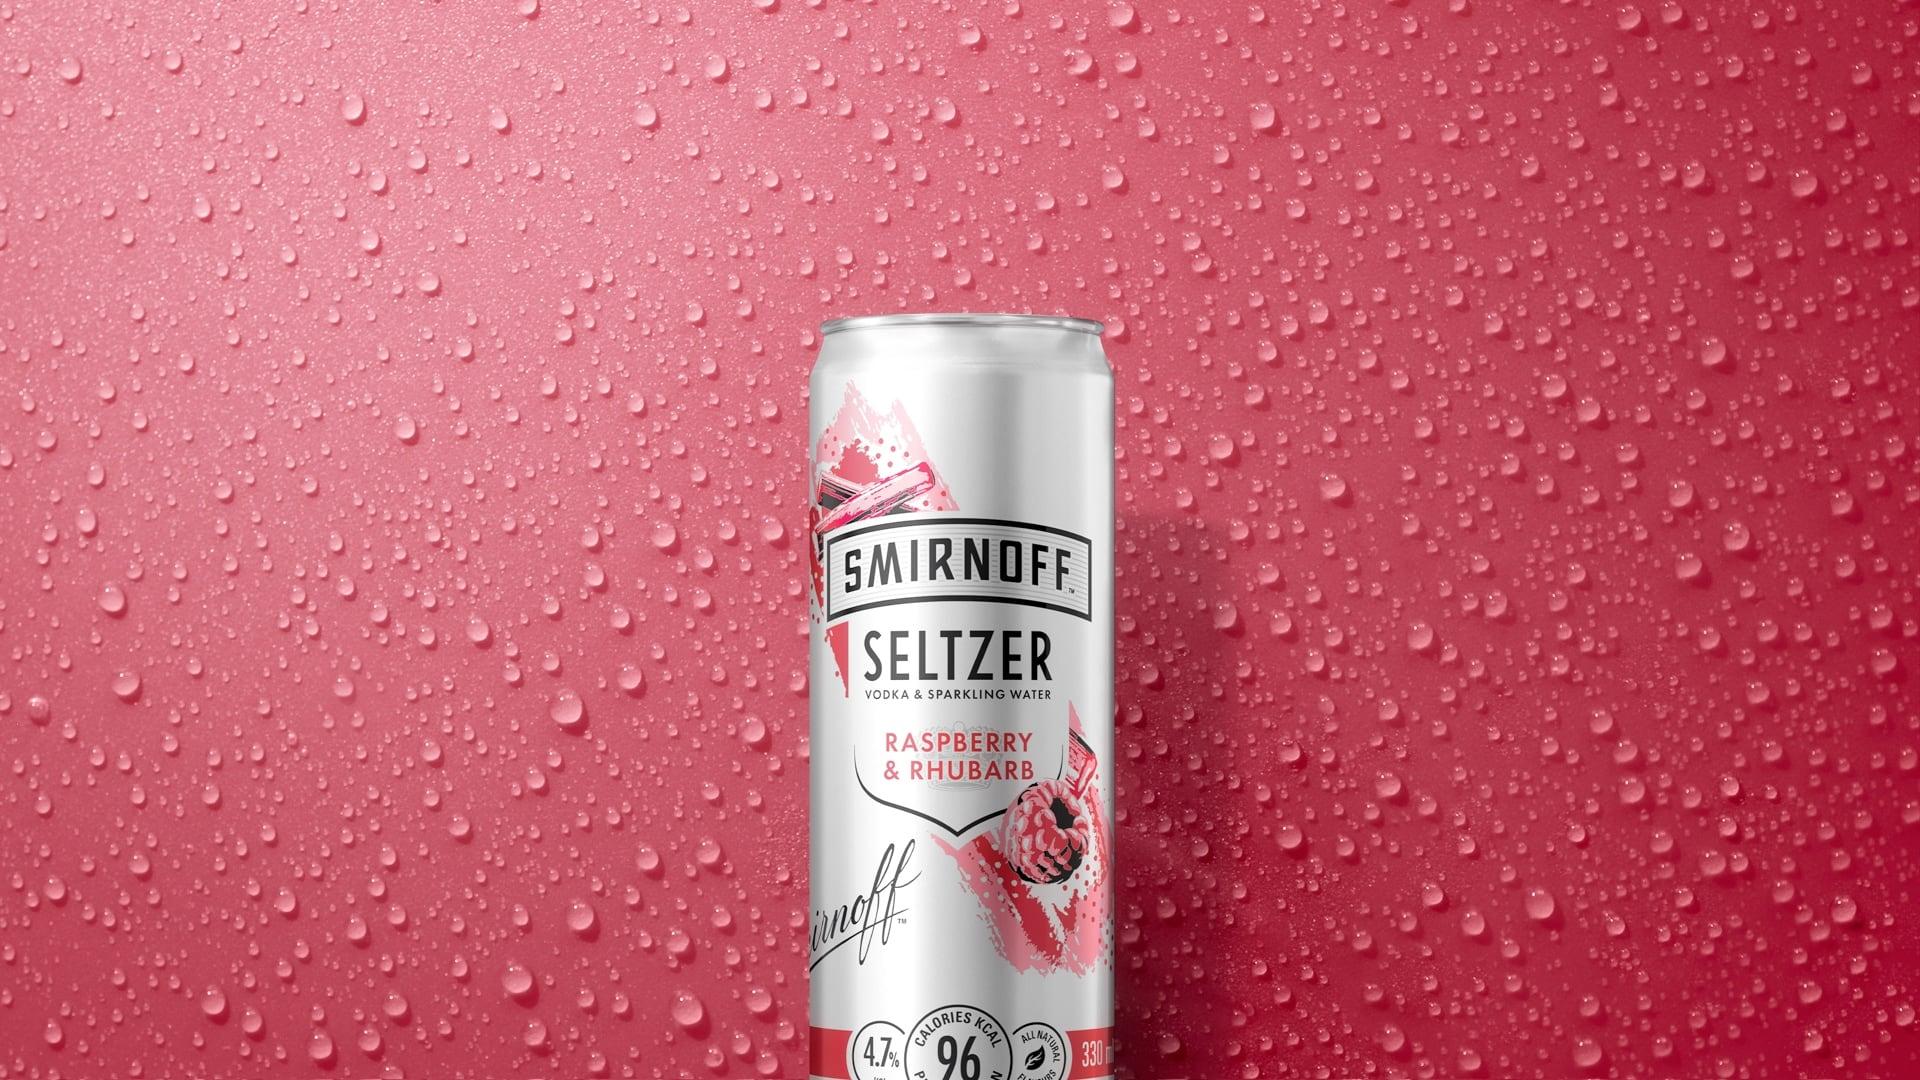 Raspberry Rhubarb Seltzer on a textured marroon background